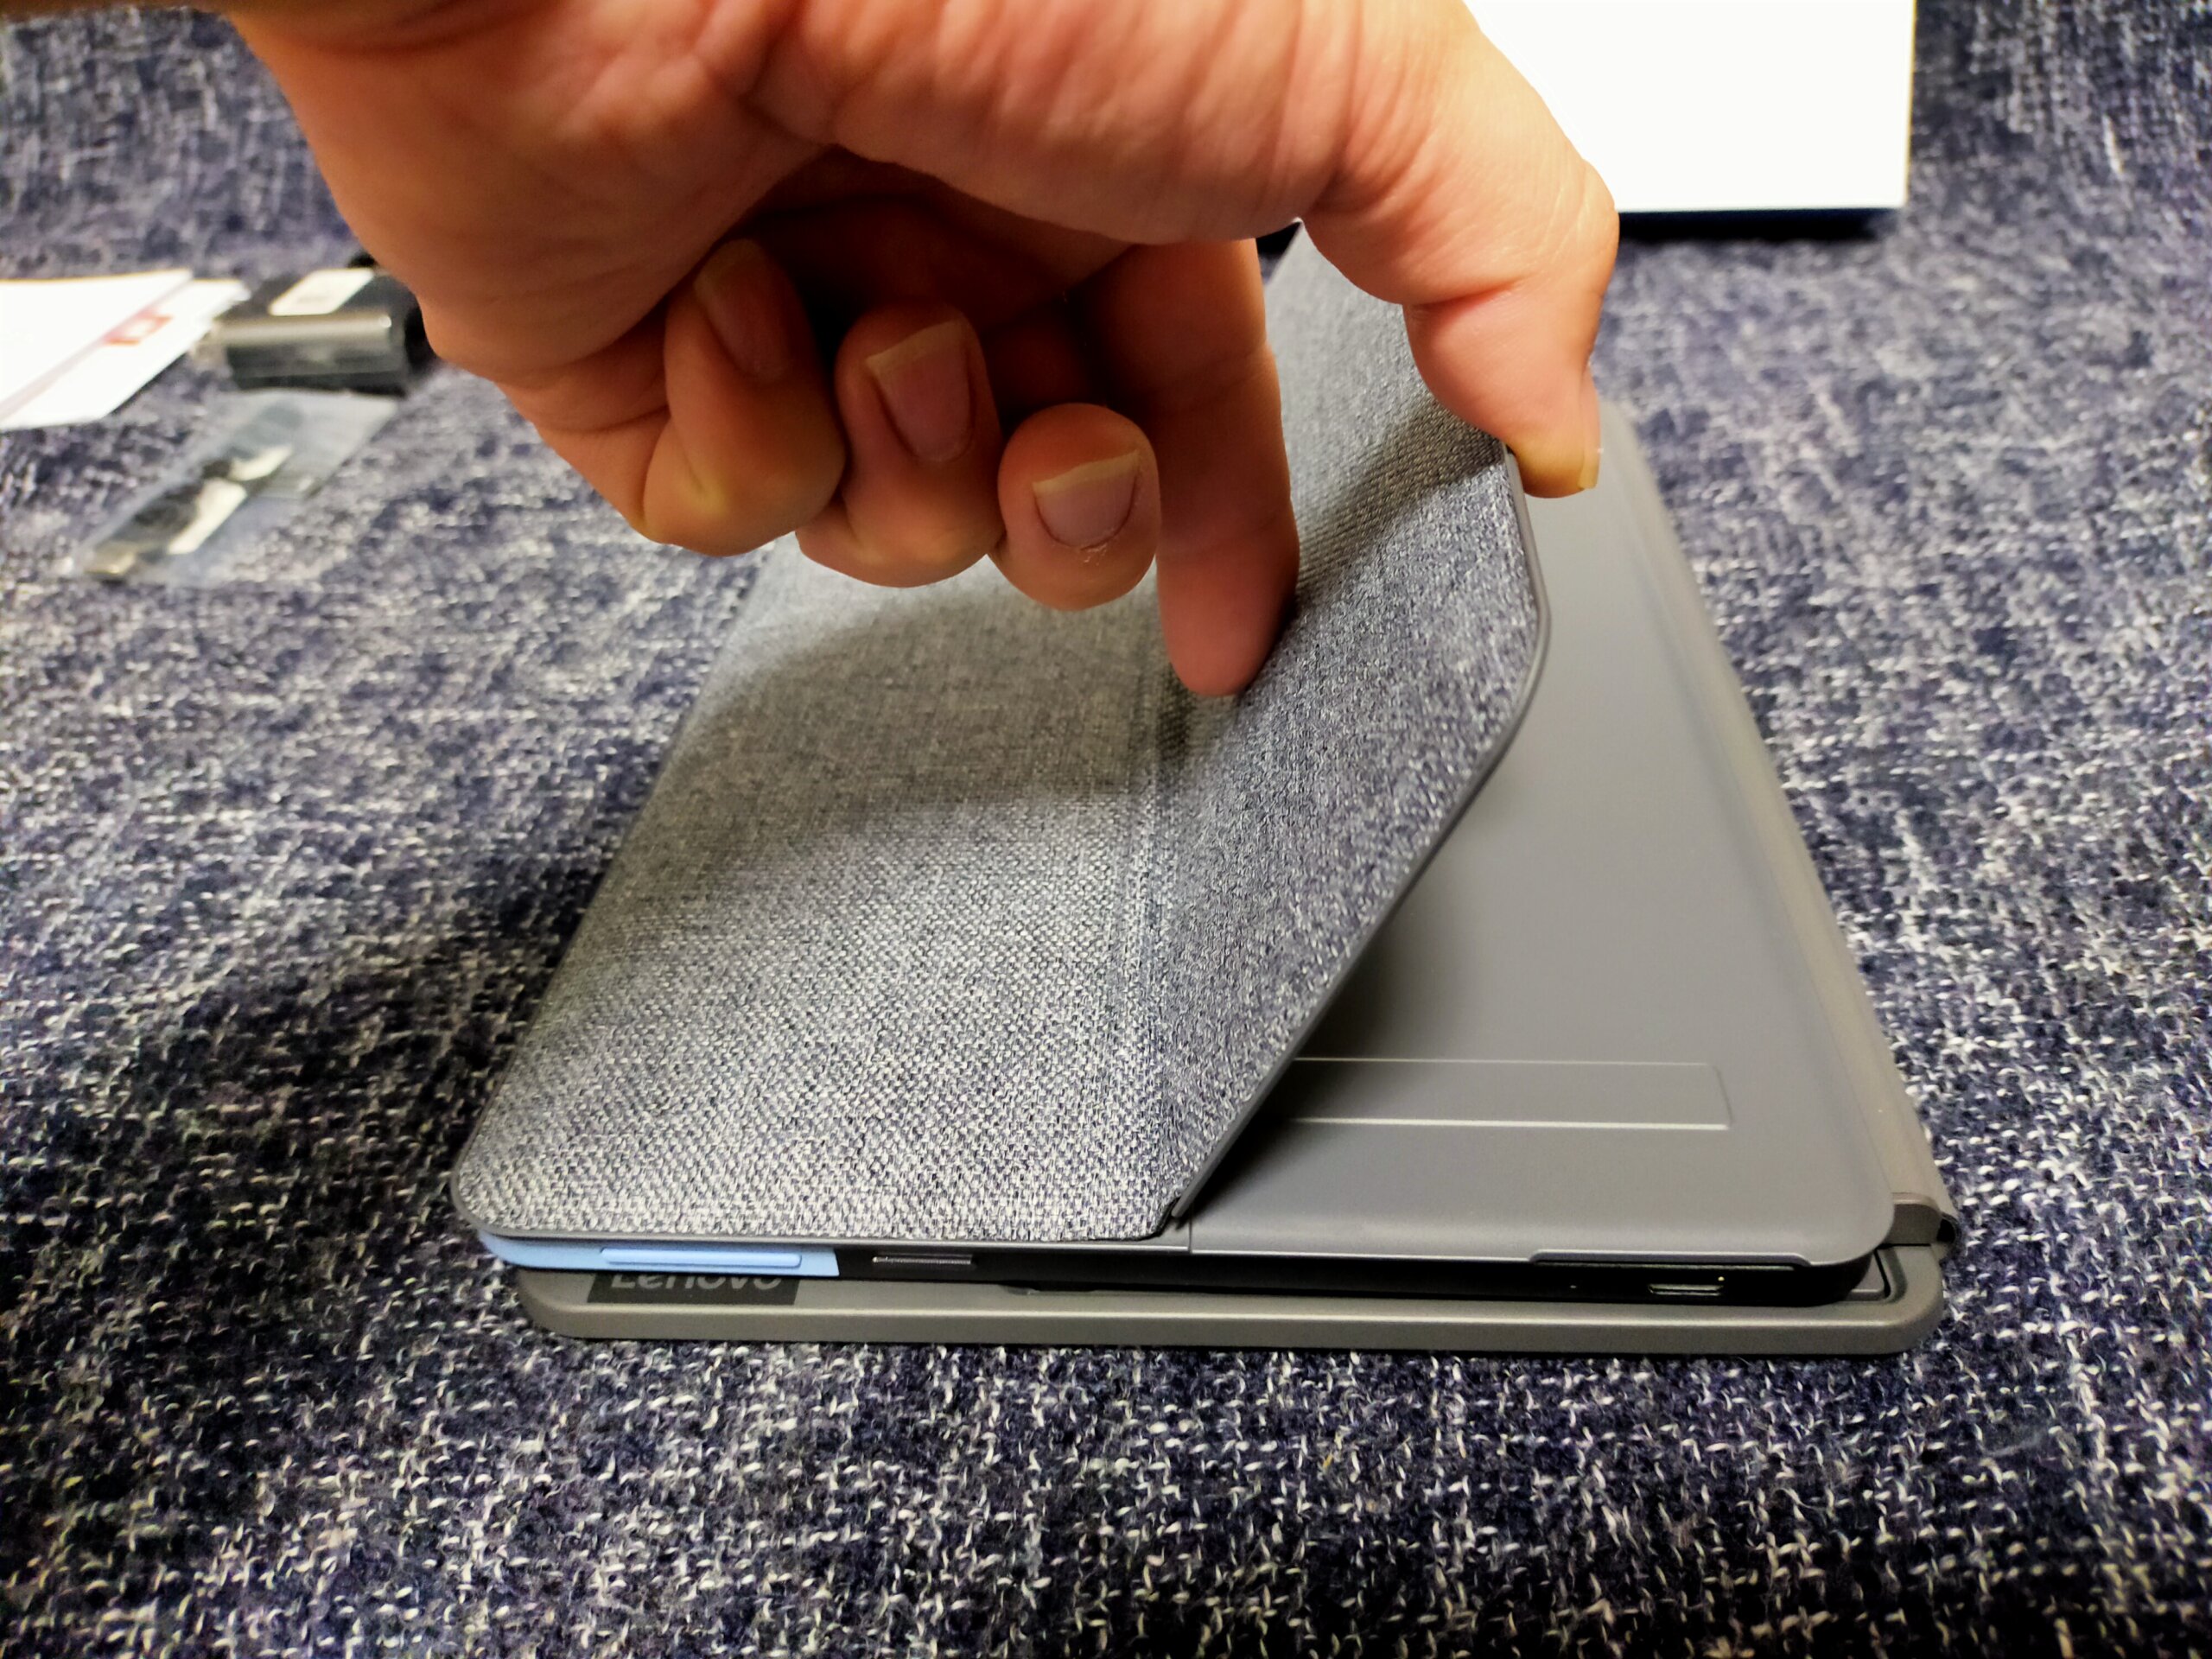 【Lenovo】ノートパソコン「Ideapad Duet Chromebook」がタブレットにもなって便利♪